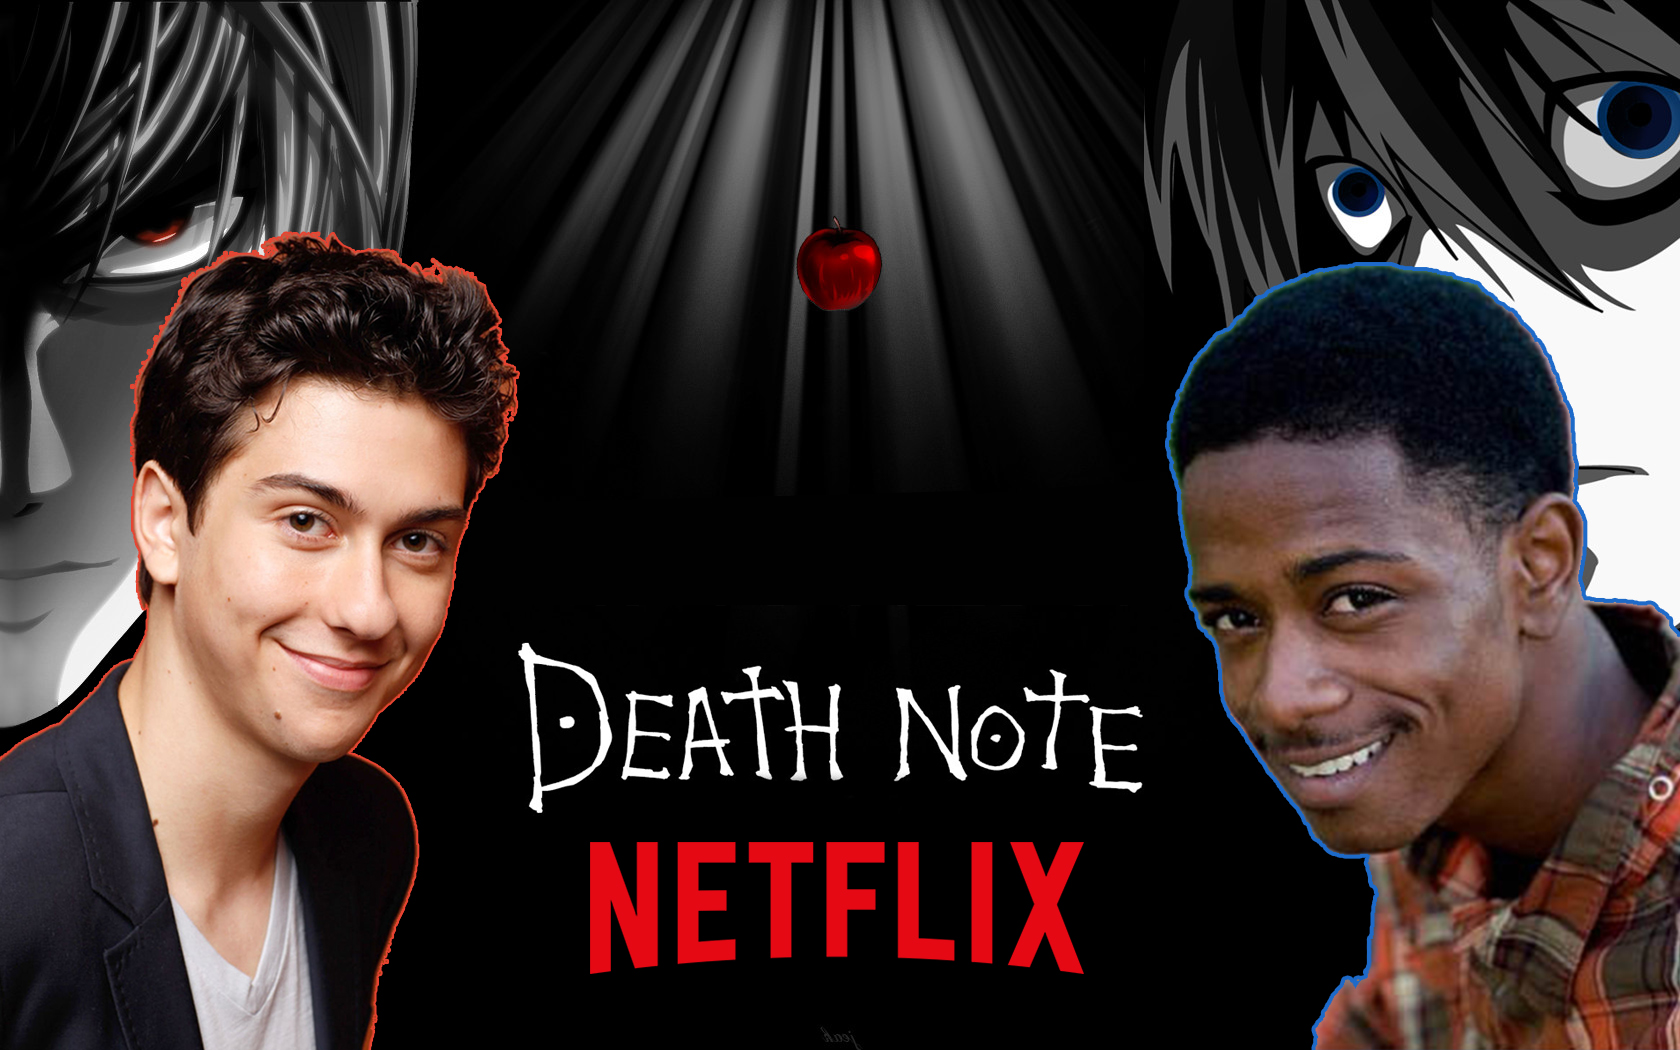  Los creadores de “Death Note” amaron la versión live action hecha por Netflix